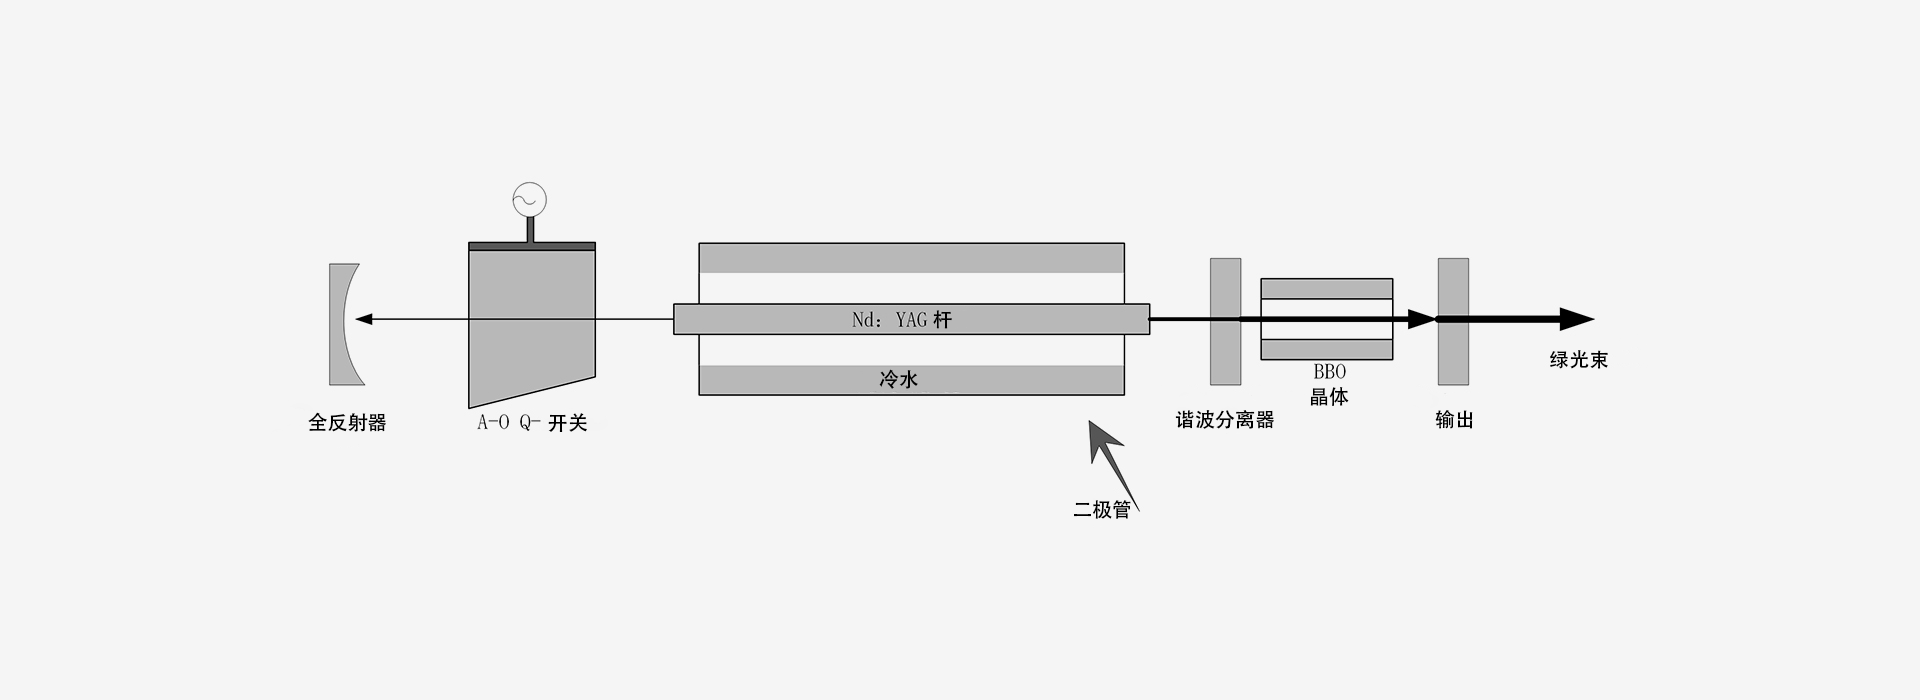 532nm-激光器原理图-南京光宝-CRYLINK